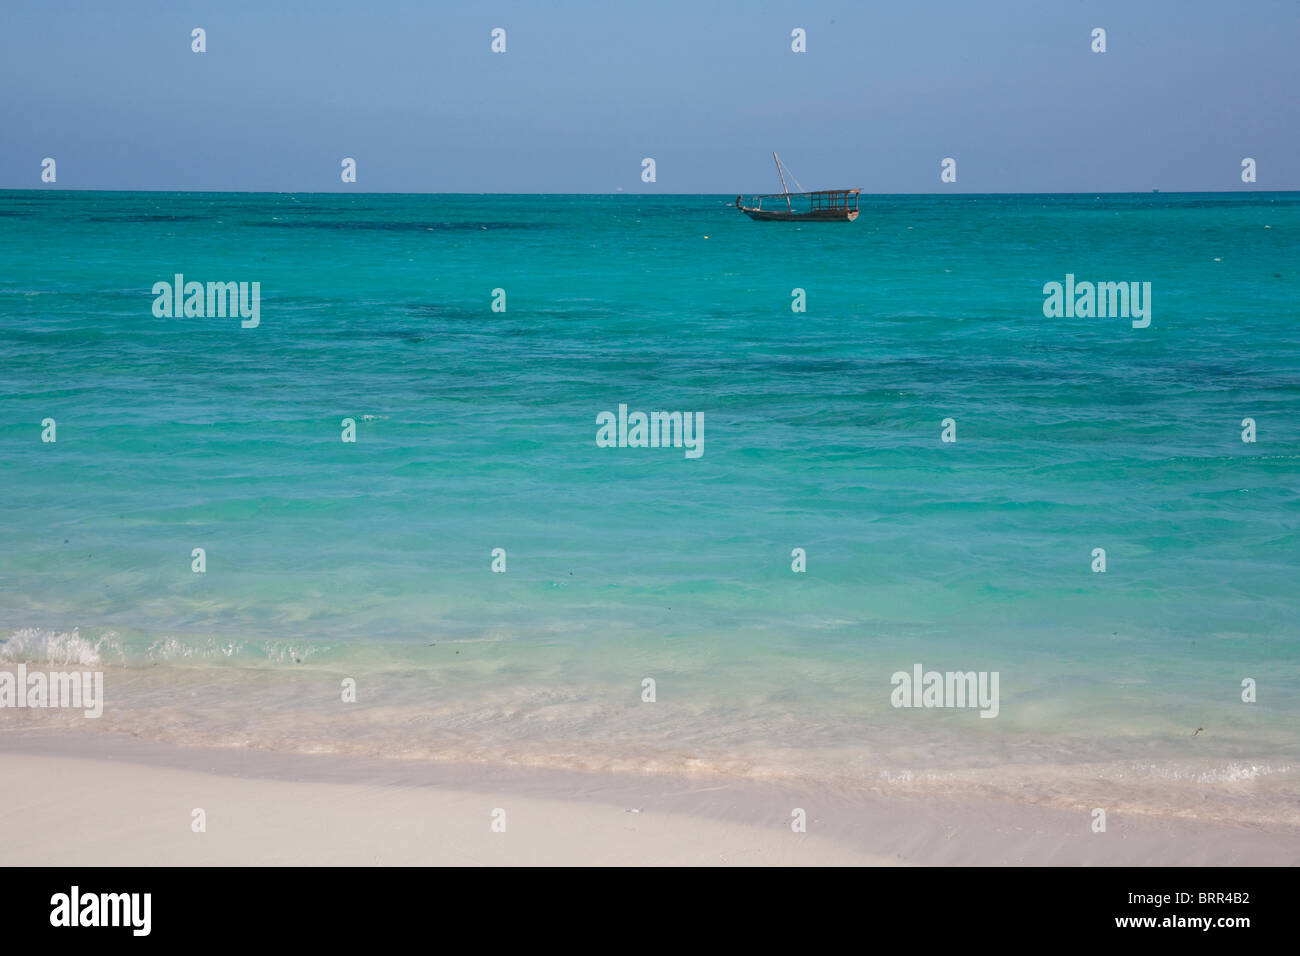 Spiaggia in scena con la barca da pesca in acque tropicali Foto Stock